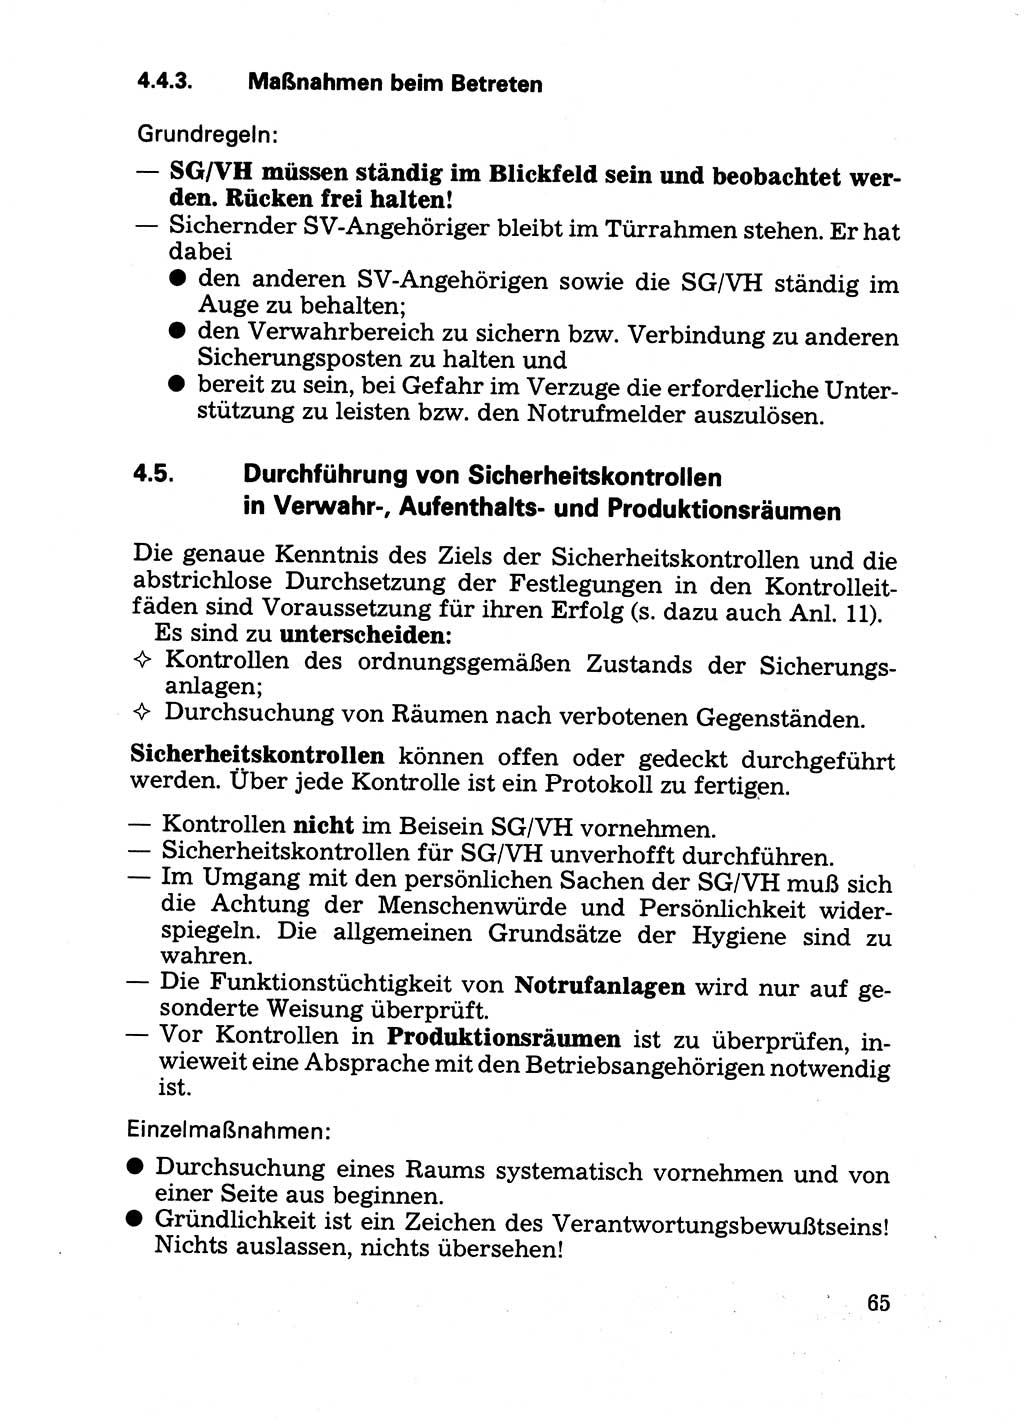 Handbuch für operative Dienste, Abteilung Strafvollzug (SV) [Ministerium des Innern (MdI) Deutsche Demokratische Republik (DDR)] 1981, Seite 65 (Hb. op. D. Abt. SV MdI DDR 1981, S. 65)